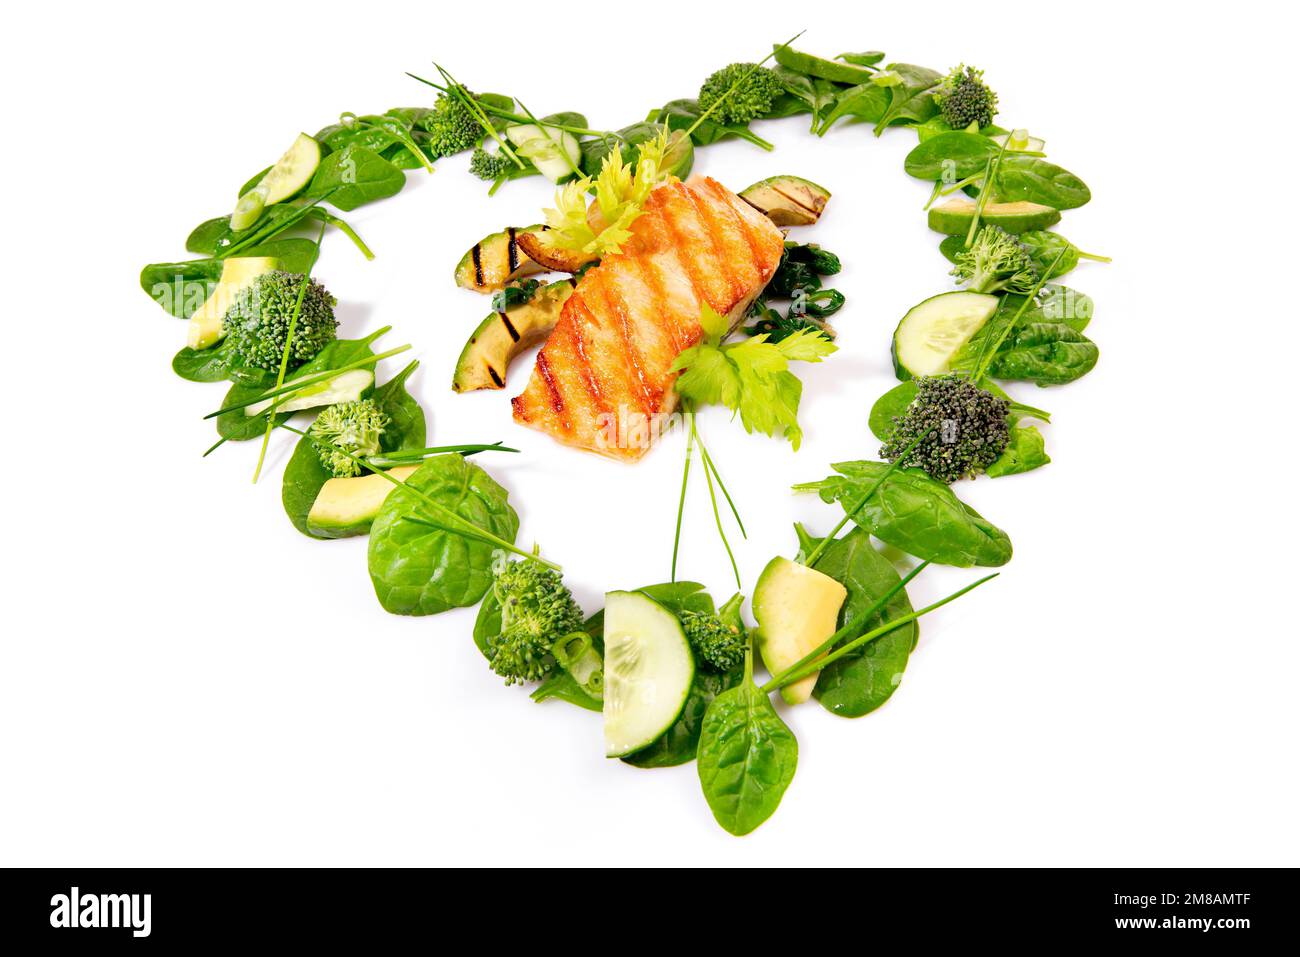 Insalata verde a forma di cuore e verdure con salmone alla griglia isolato su sfondo bianco Foto Stock